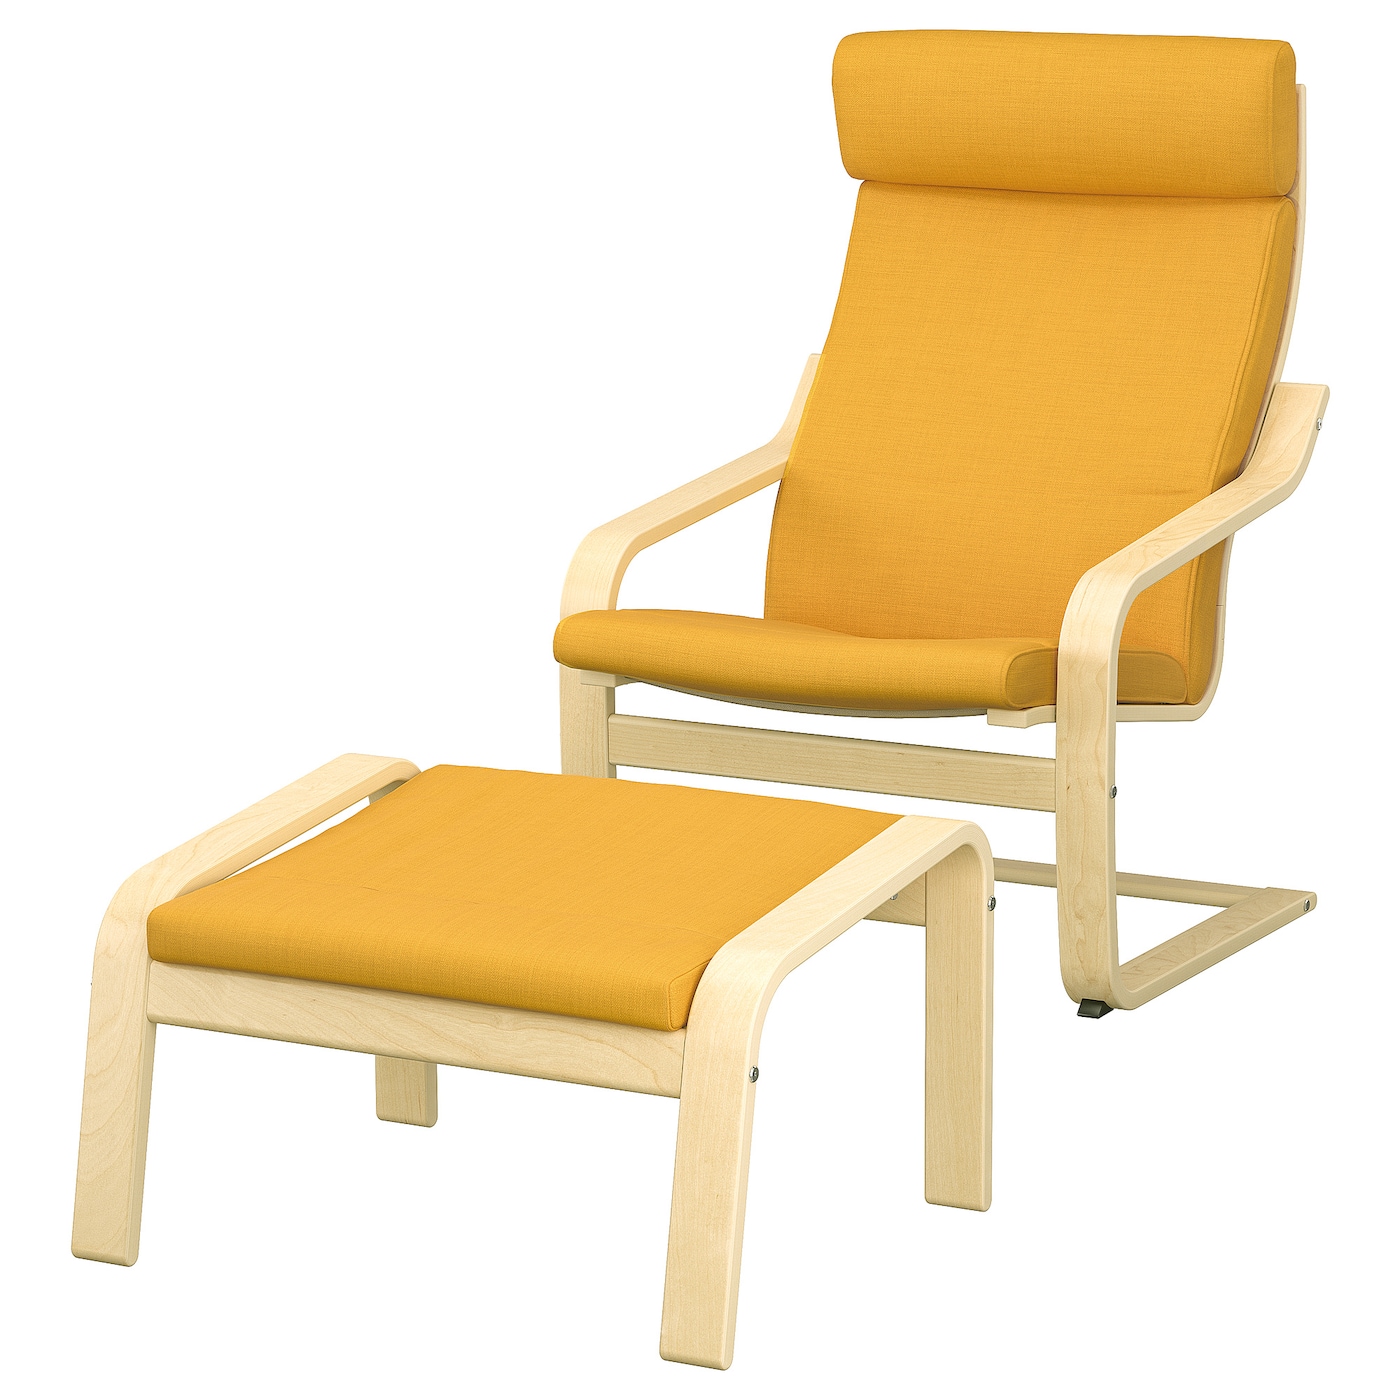 ПОЭНГ Кресло и подставка для ног, березовый шпон/Скифтебо желтый POÄNG IKEA кресло уличное сатурн удлиненное из полнотелого бруса дпк на металлокаркасе